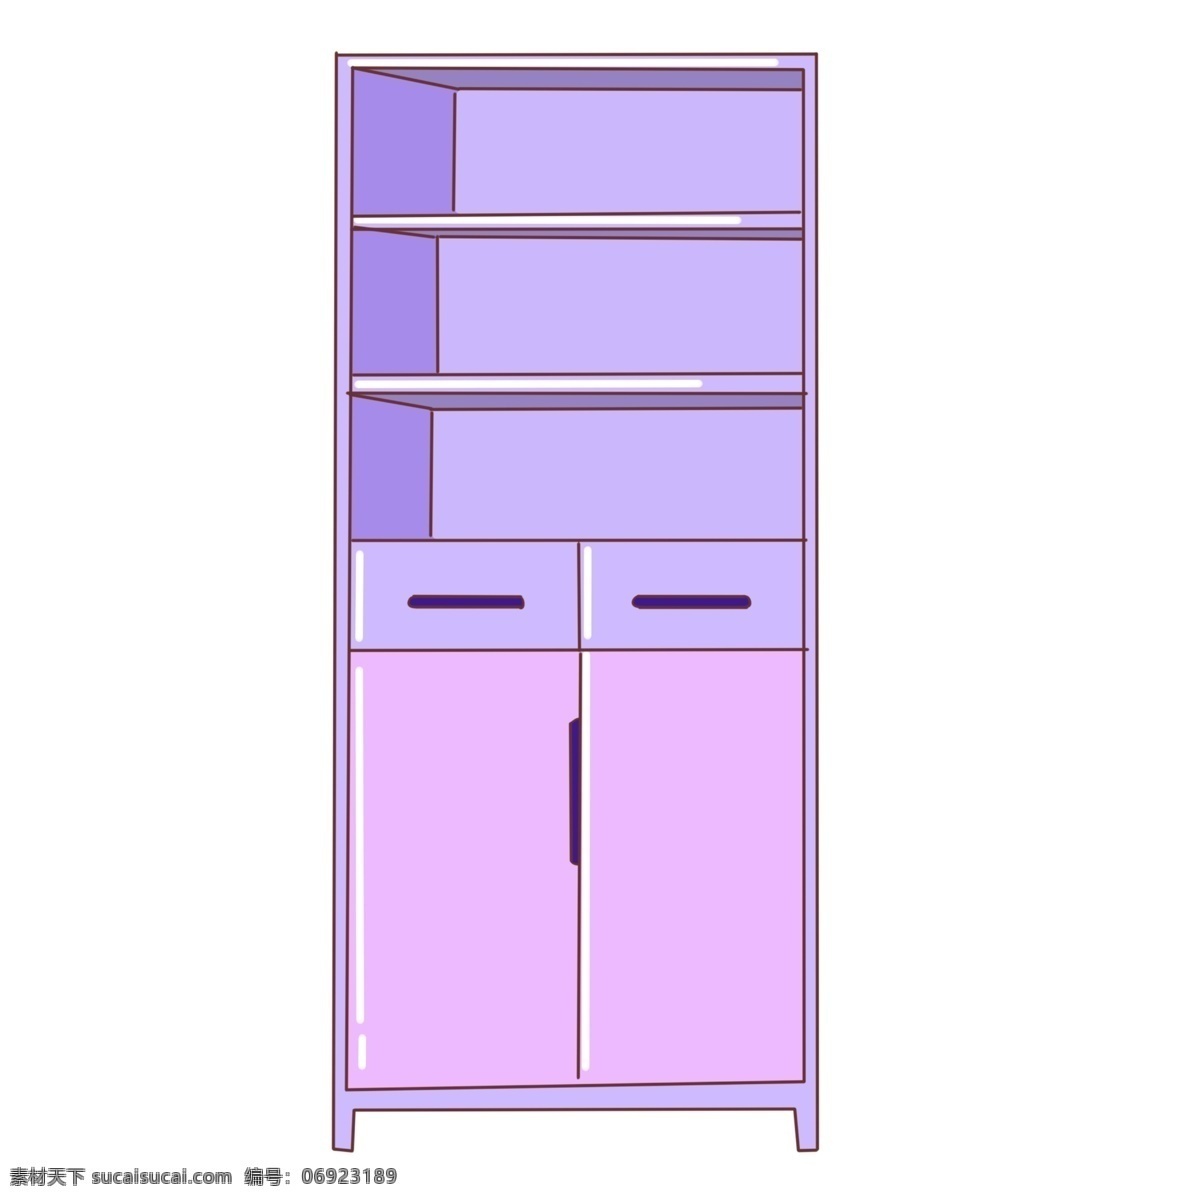 漂亮 紫色 柜子 插画 家具 紫色家具 小衣柜 紫色衣柜 抽屉 叠放区 漂亮的柜子 紫色柜子插画